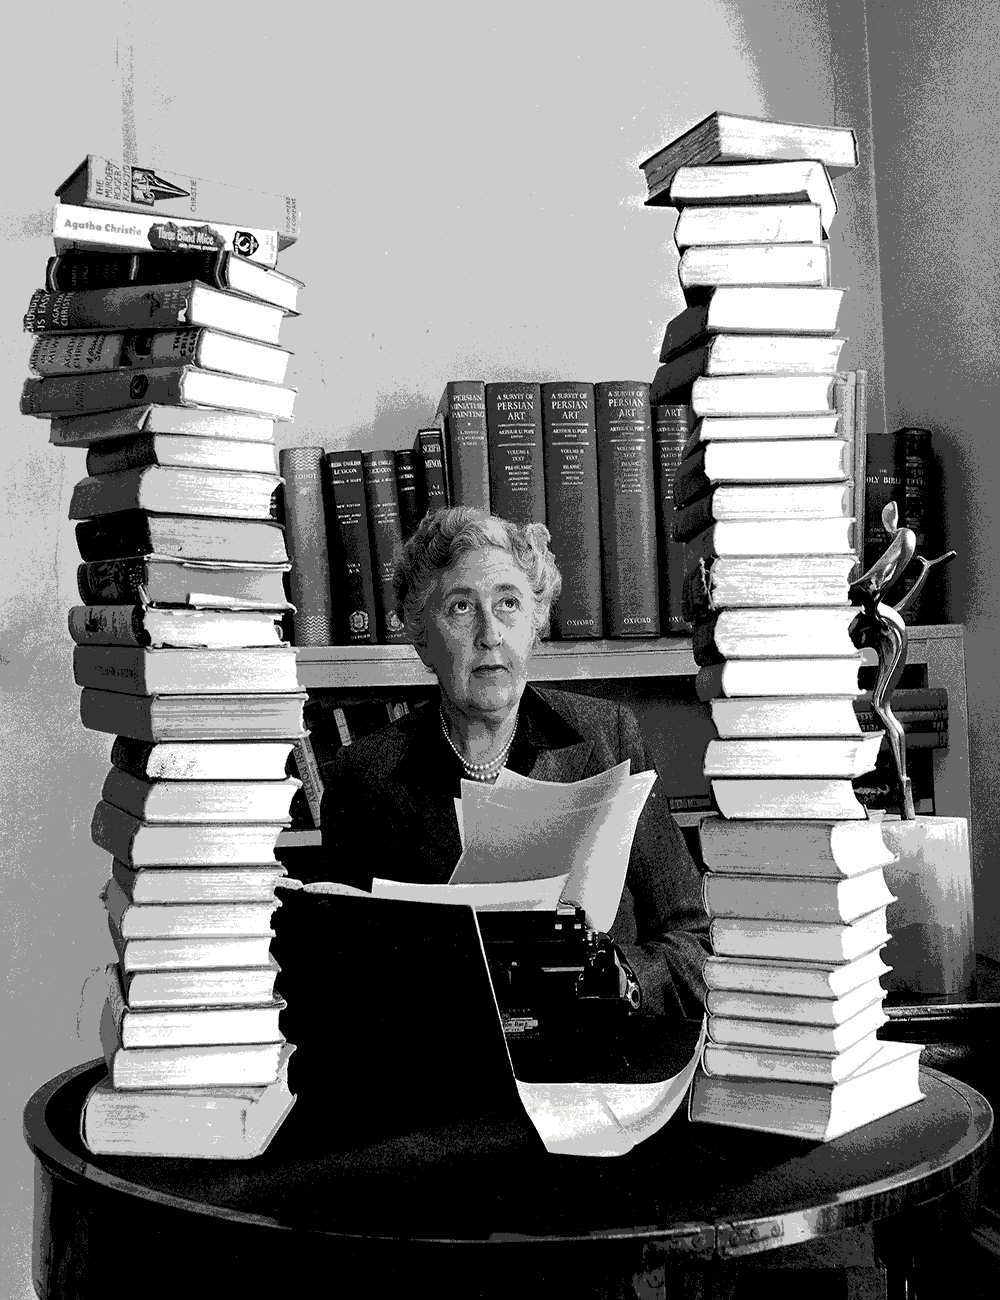 آگاتا کریستی (Agatha Christie) نویسنده انگلیسی رمان های پلیسی